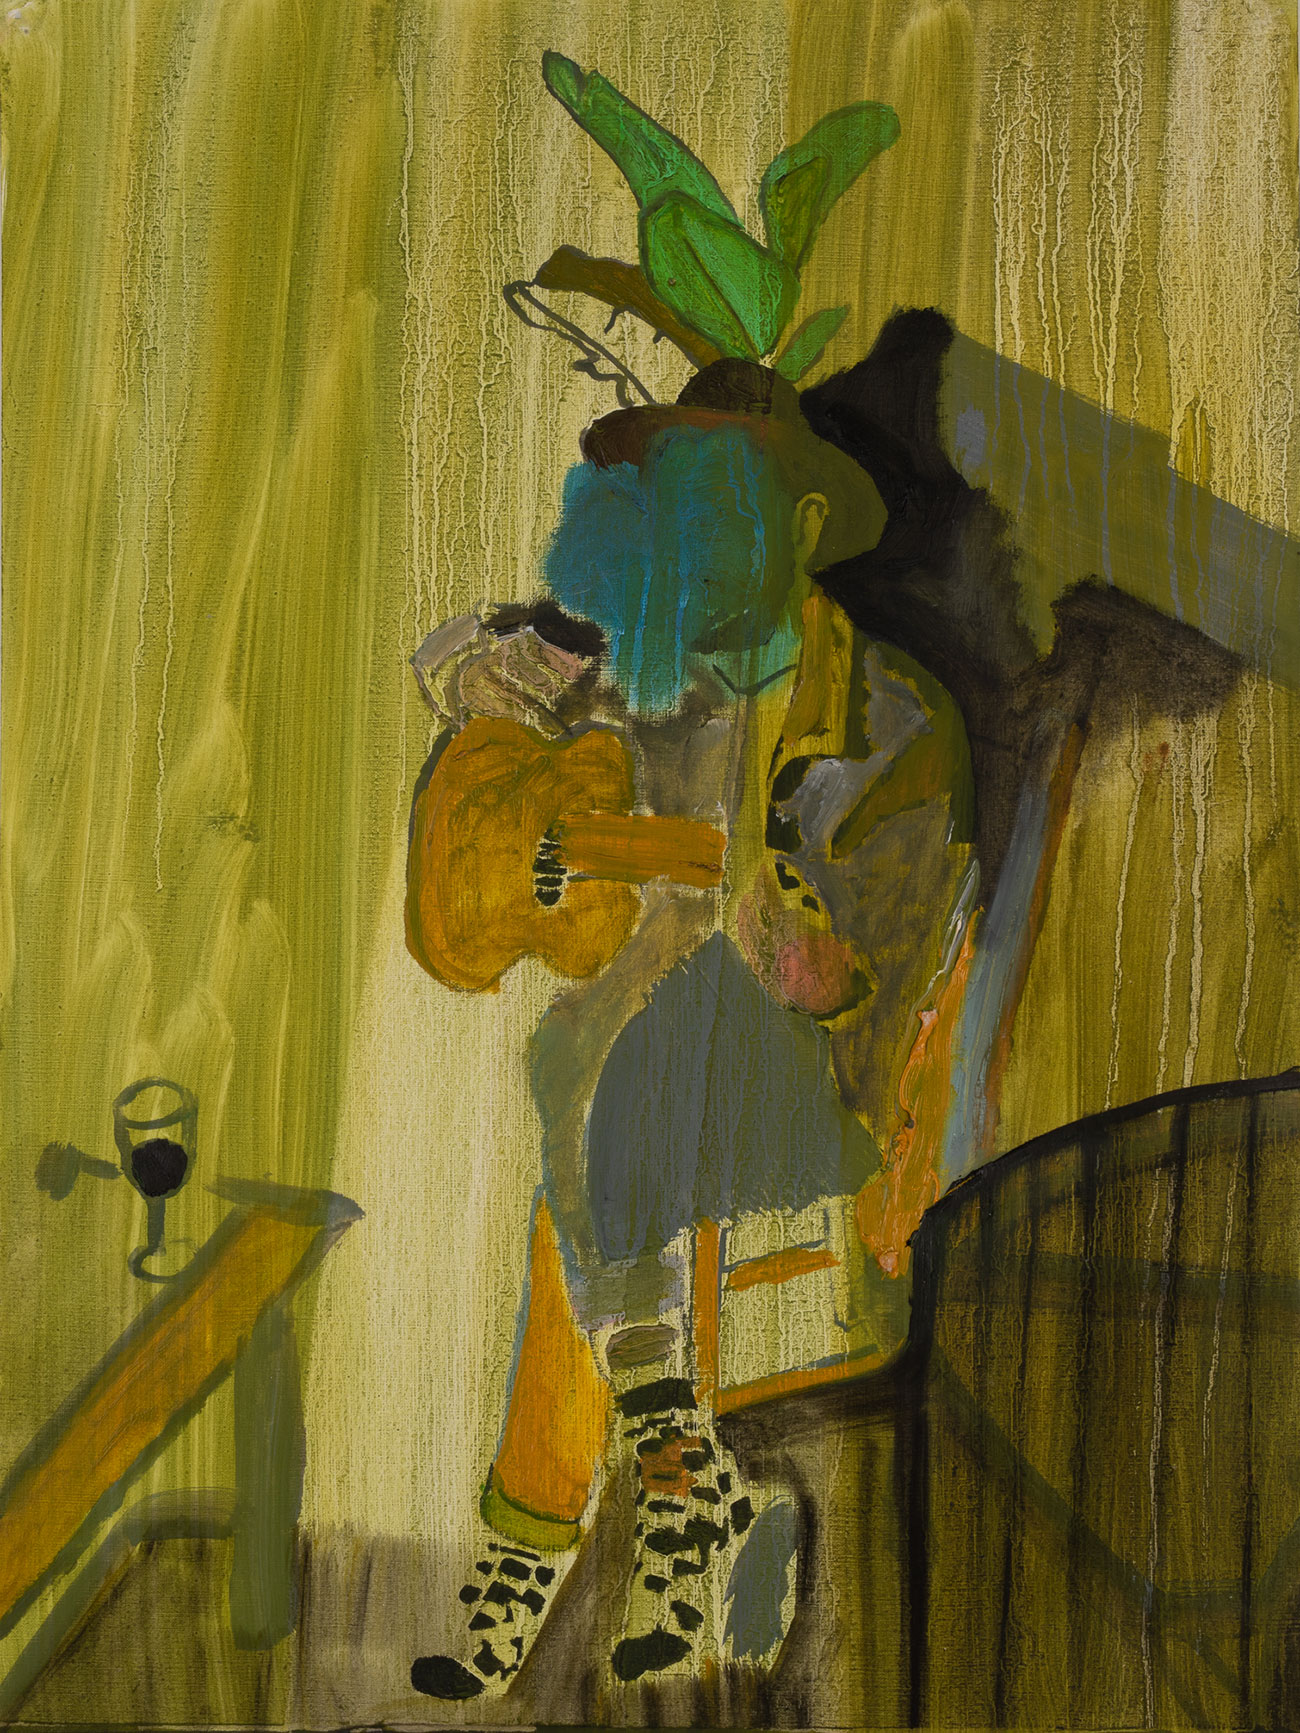 Rodrigo Amarante 2, 2020 - Oil on paper 48 x 36 cm